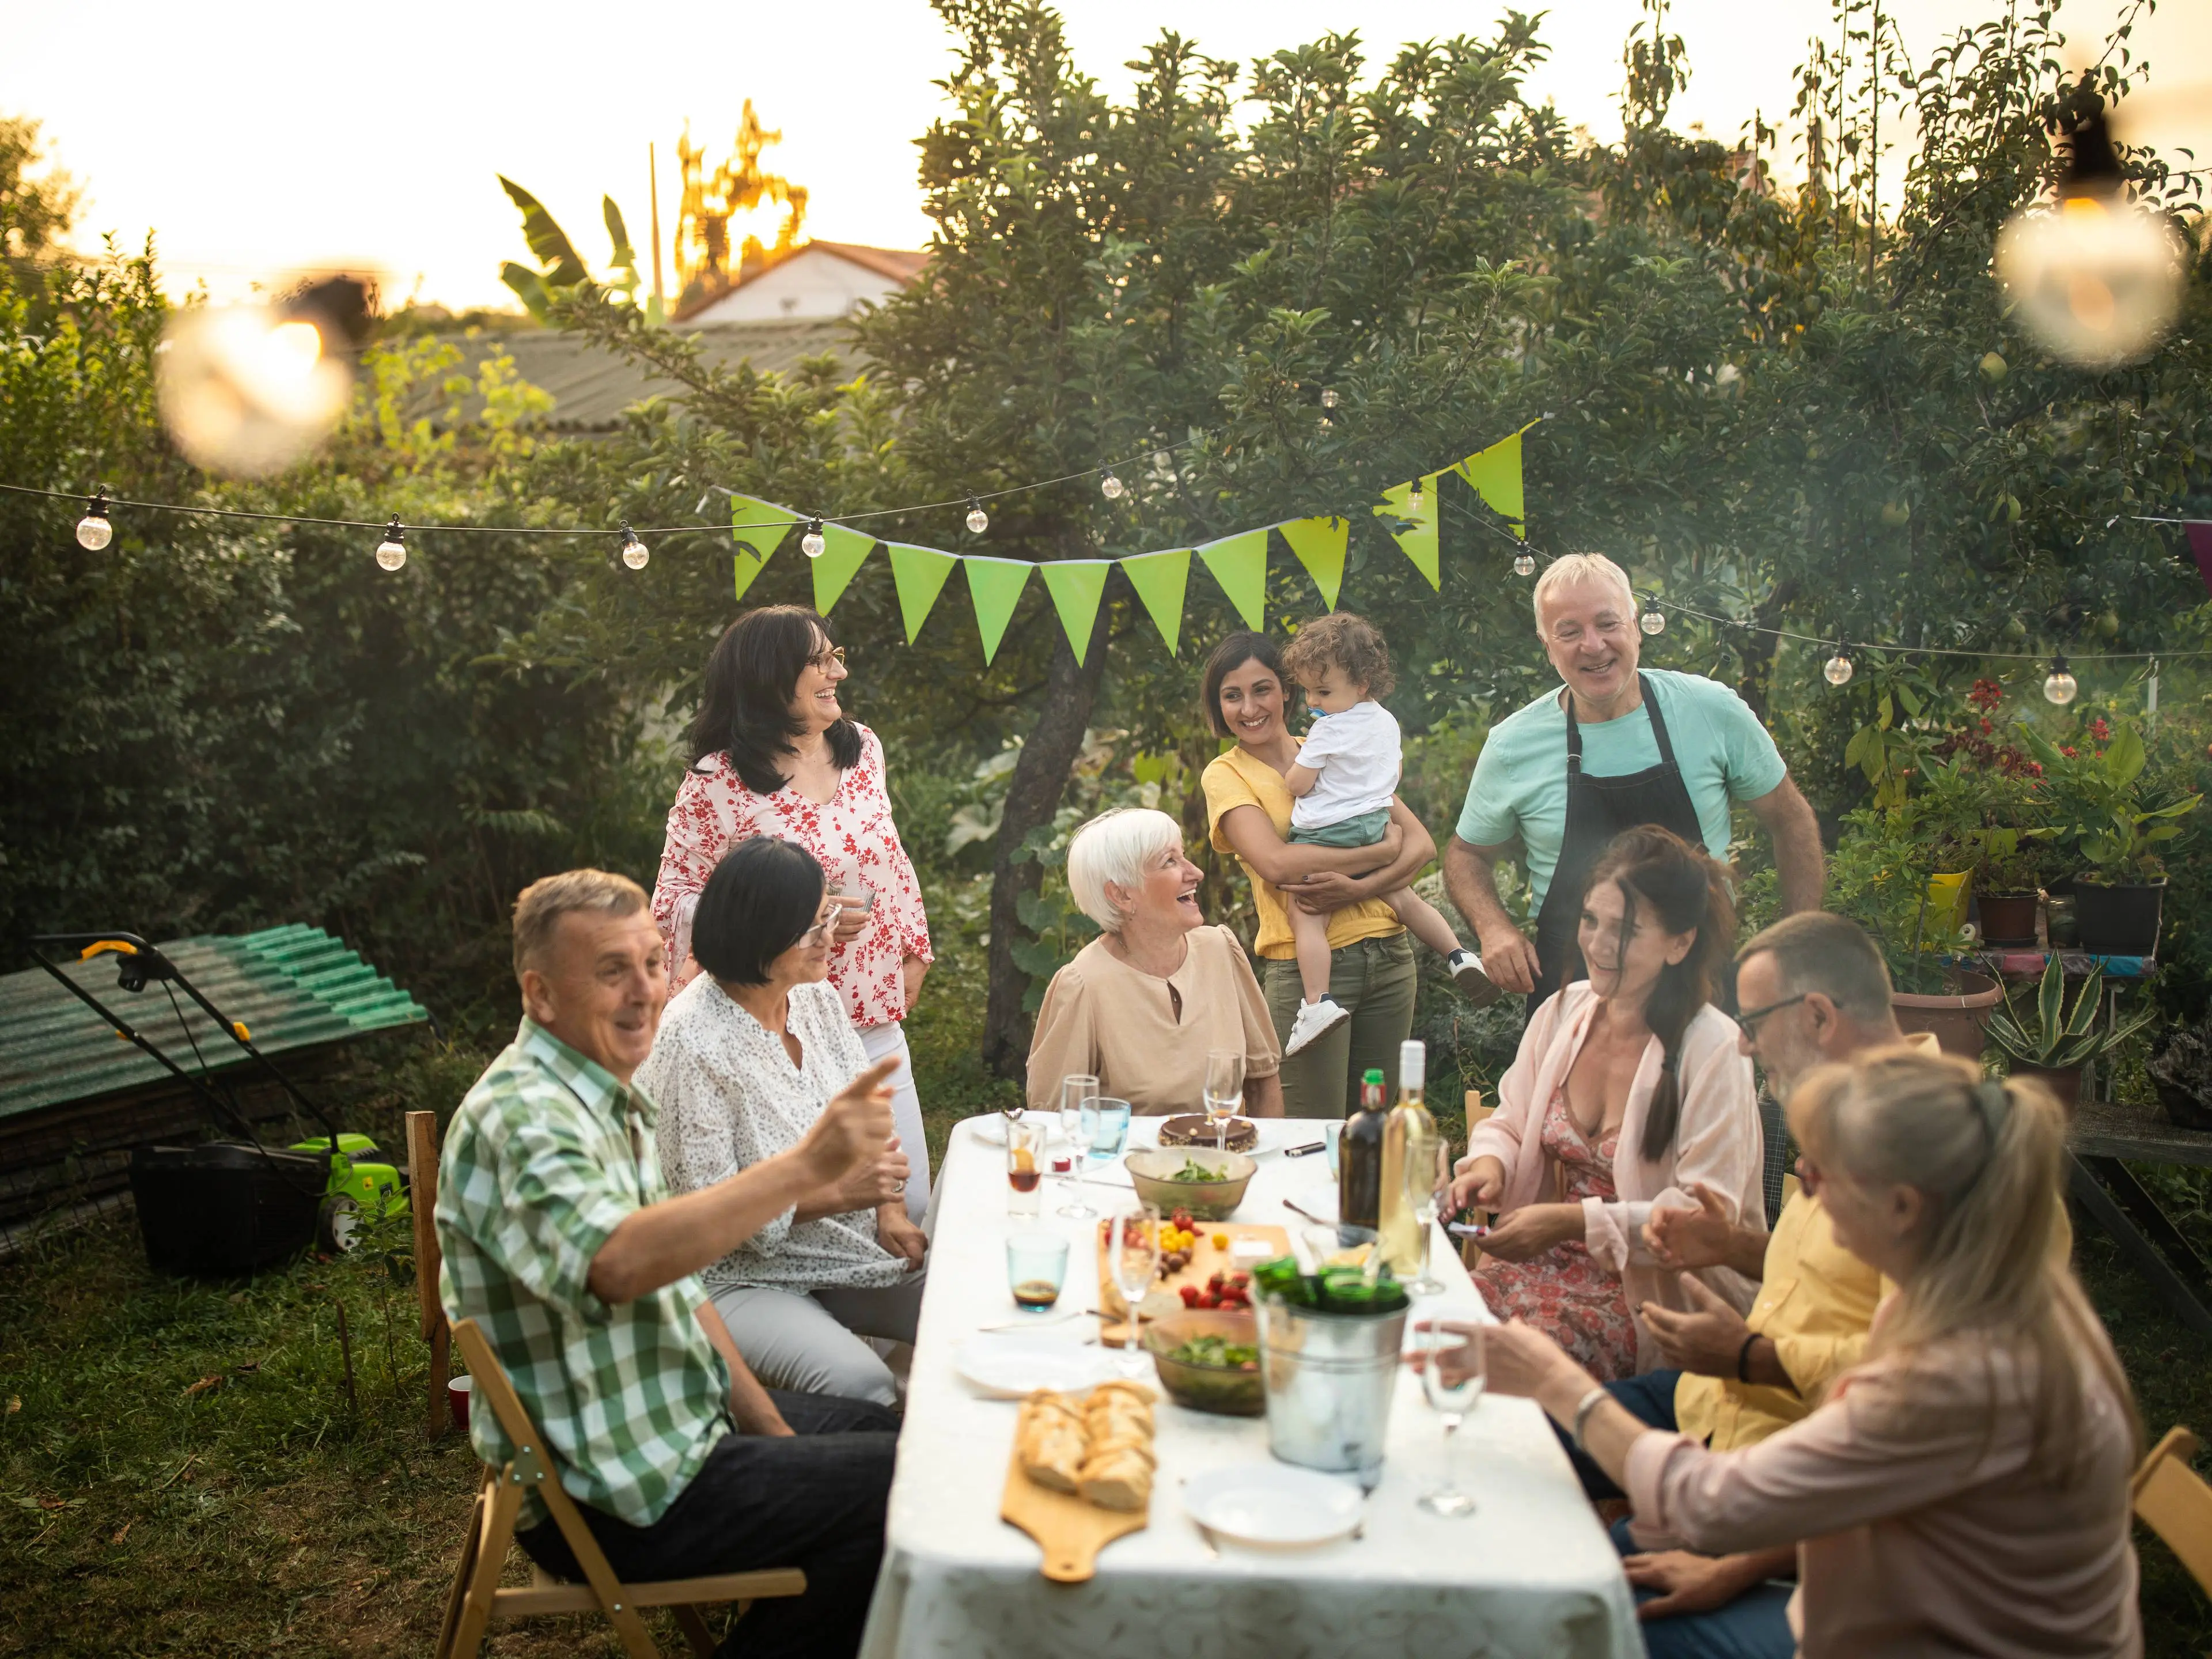 Nachbarn verschiedenen Alters sitzen oder stehen um einen langen Tisch im Garten, lachen und unterhalten sich